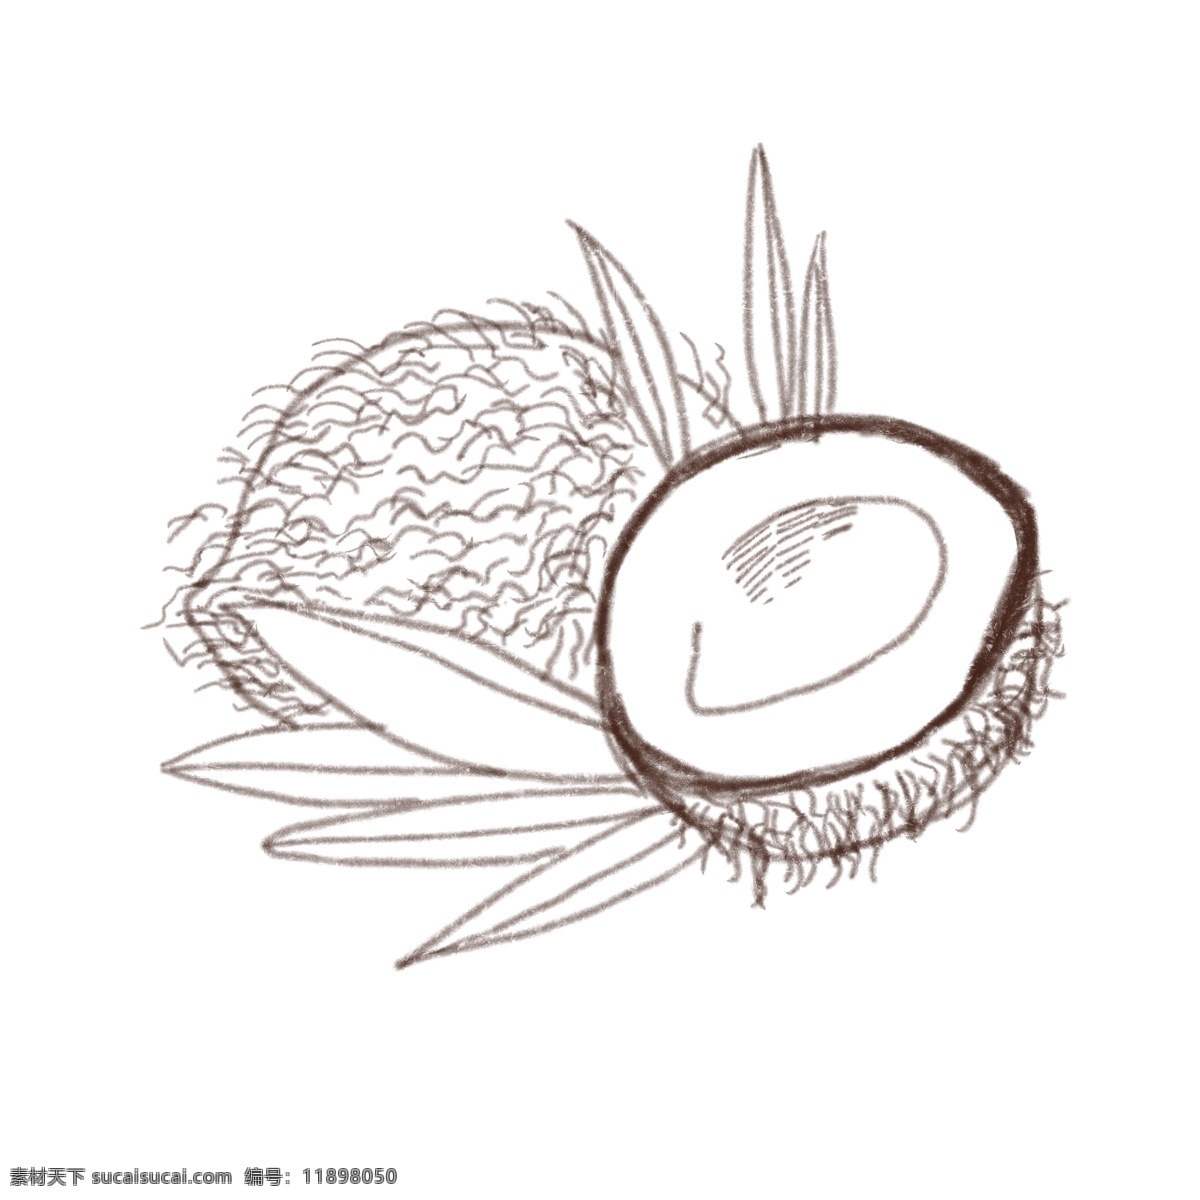 线描 椰子 手绘 插画 线描椰子插画 白色 线描叶子插画 可爱 立体线描椰子 创意线描椰子